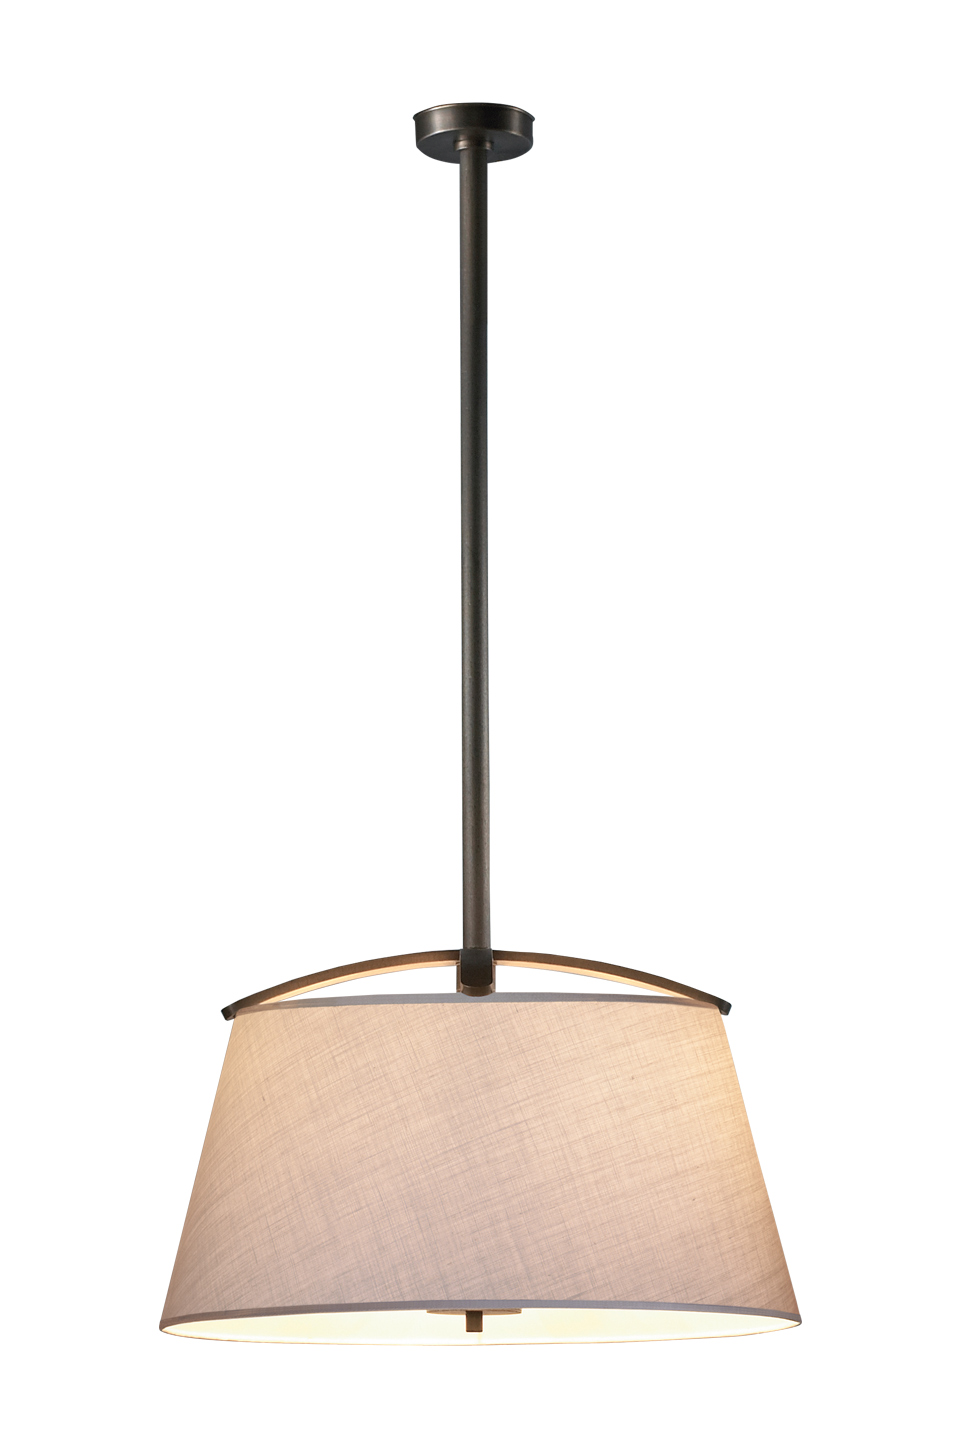 Pia est une suspension LED en bronze, agrémenté d’un abat-jour avec bordure cousue main. Ce luminaire figure dans le catalogue Promemoria | Promemoria